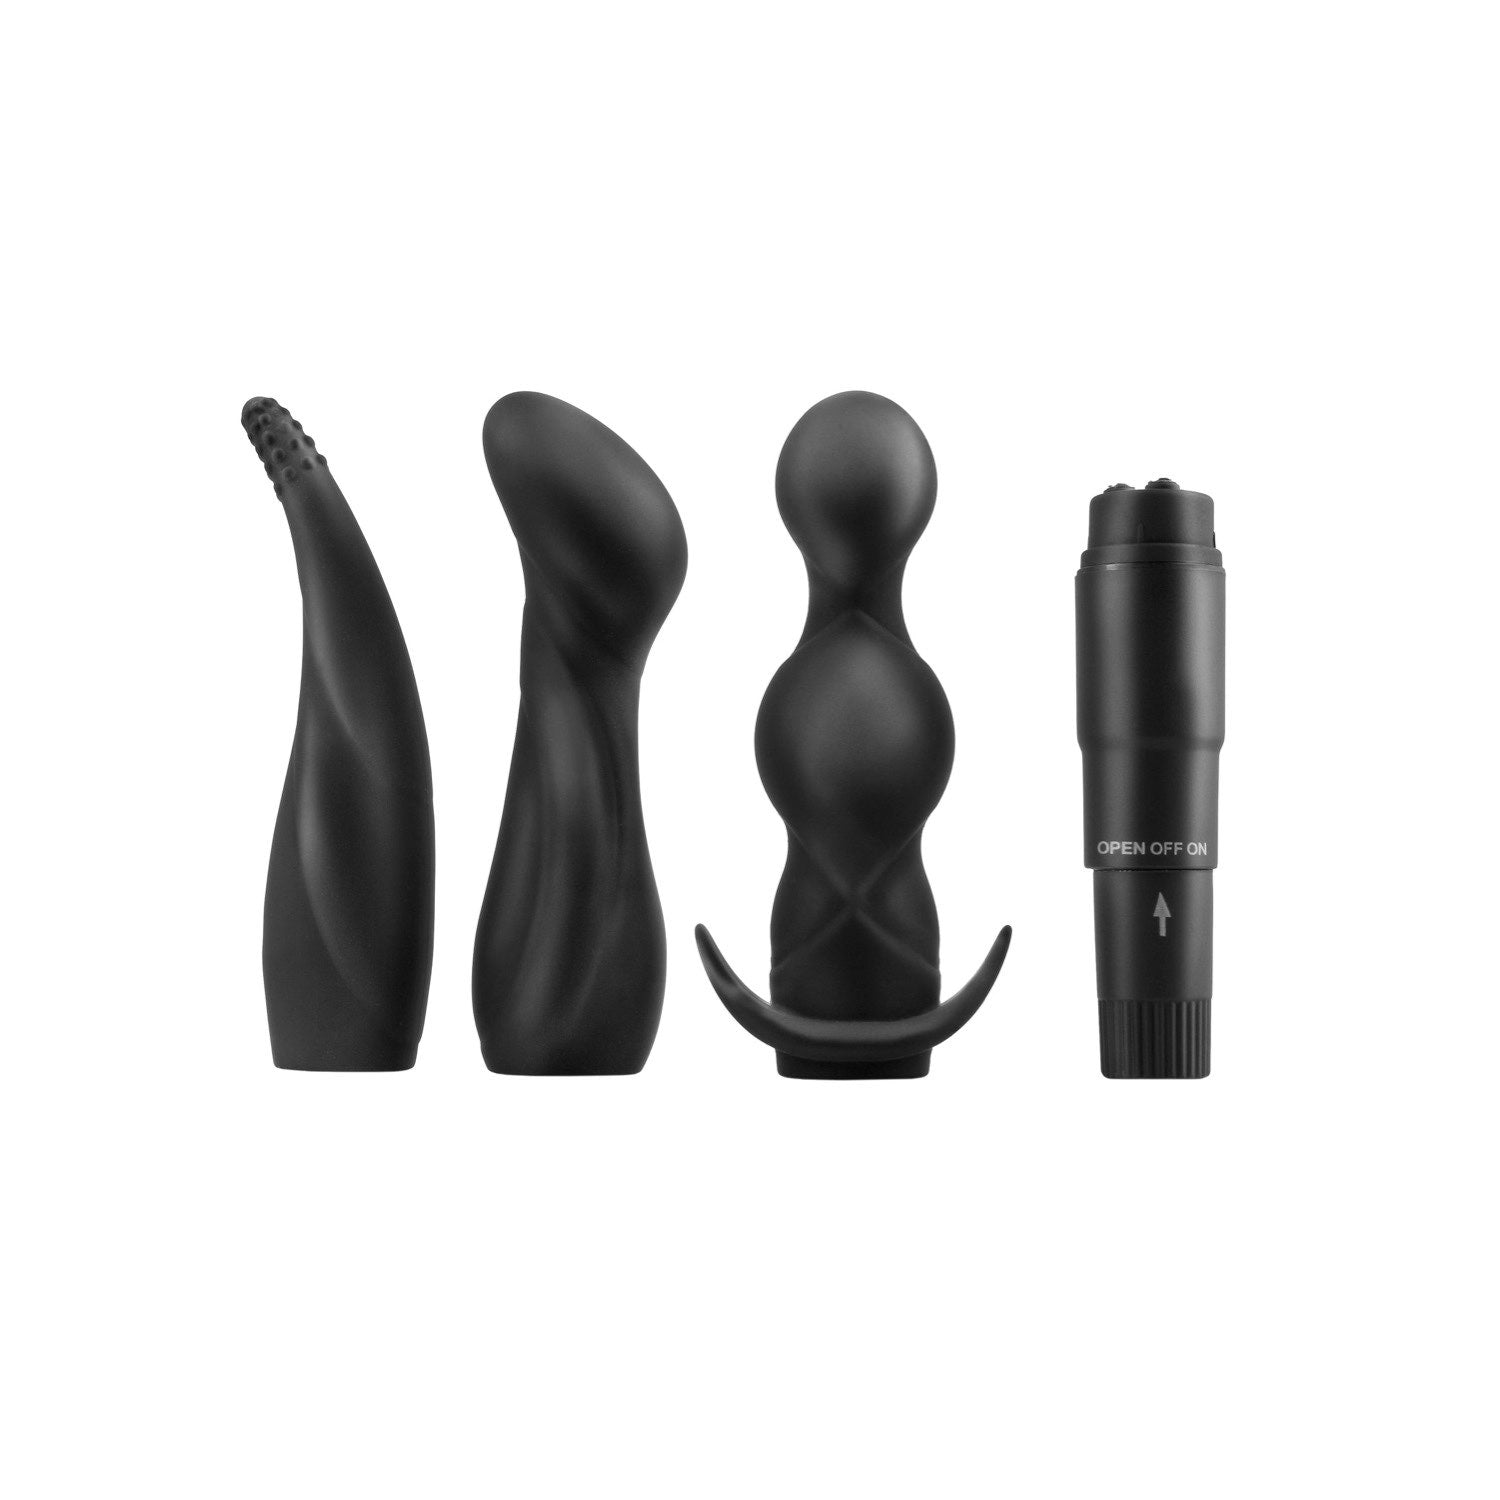 肛门幻想系列 肛门冒险套件 - 黑色振动器，带 3 个肛门套 by Pipedream